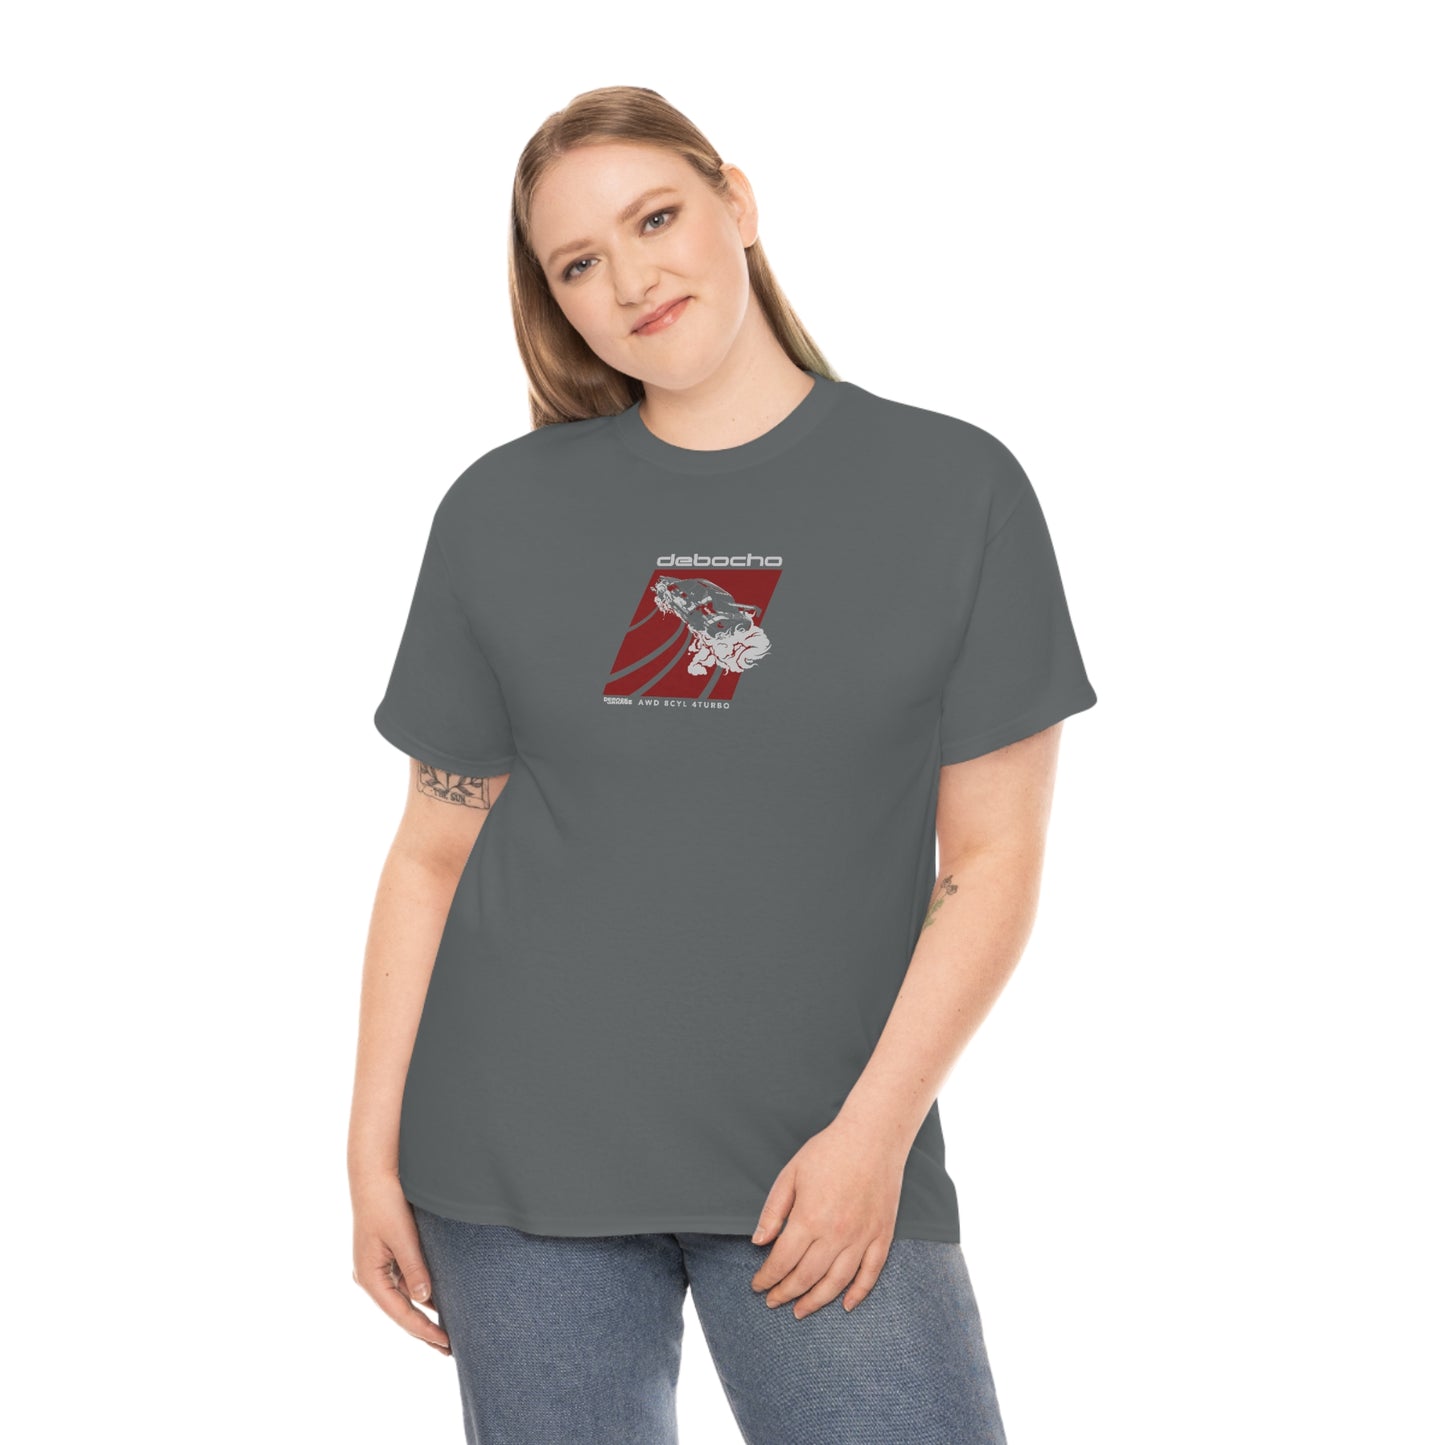 Debocho T-Shirt (3XL+)